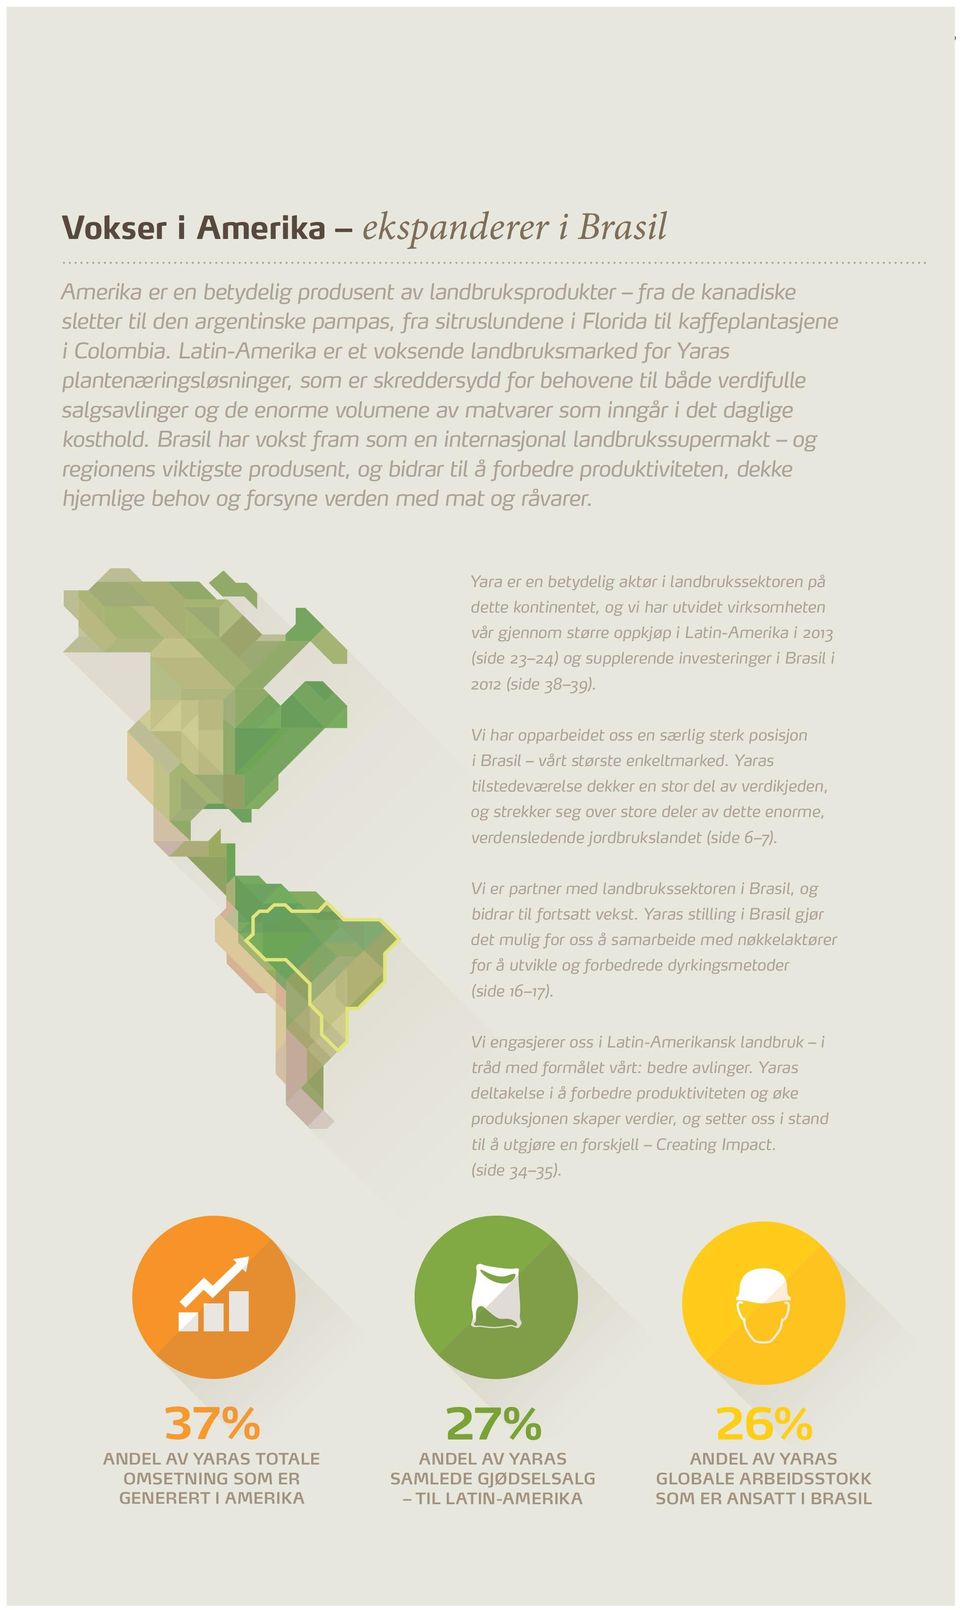 Latin-Amerika er et voksende landbruksmarked for Yaras plantenæringsløsninger, som er skreddersydd for behovene til både verdifulle salgsavlinger og de enorme volumene av matvarer som inngår i det